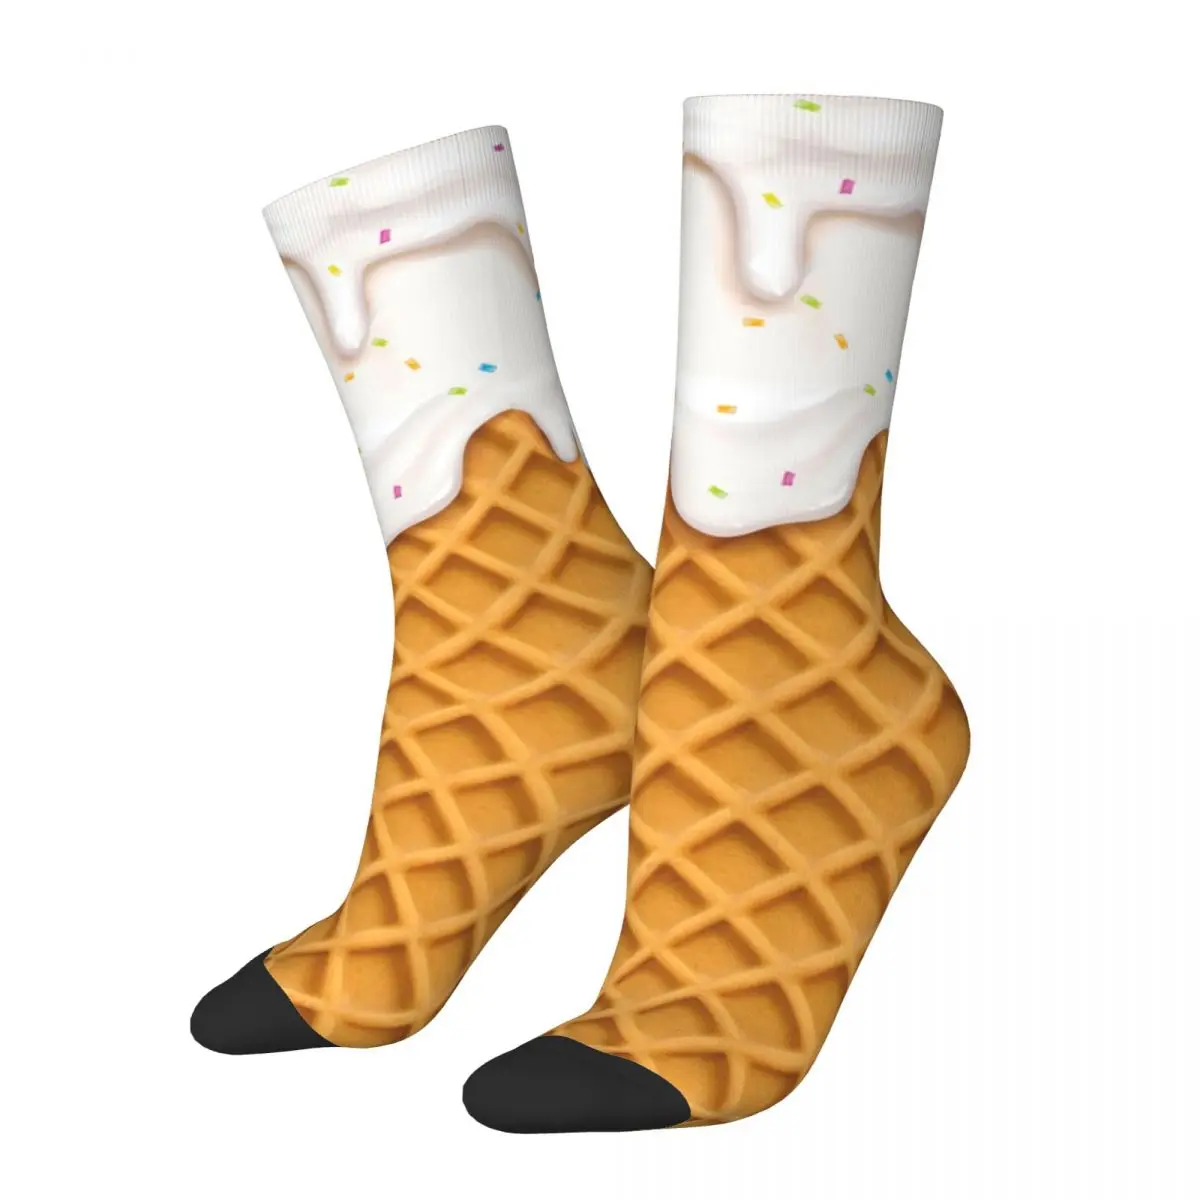 Hip-hop Vanilla Ice Cream Waffle Sports Socks Polyester Middle Tube Socks for Women Men Non-slip